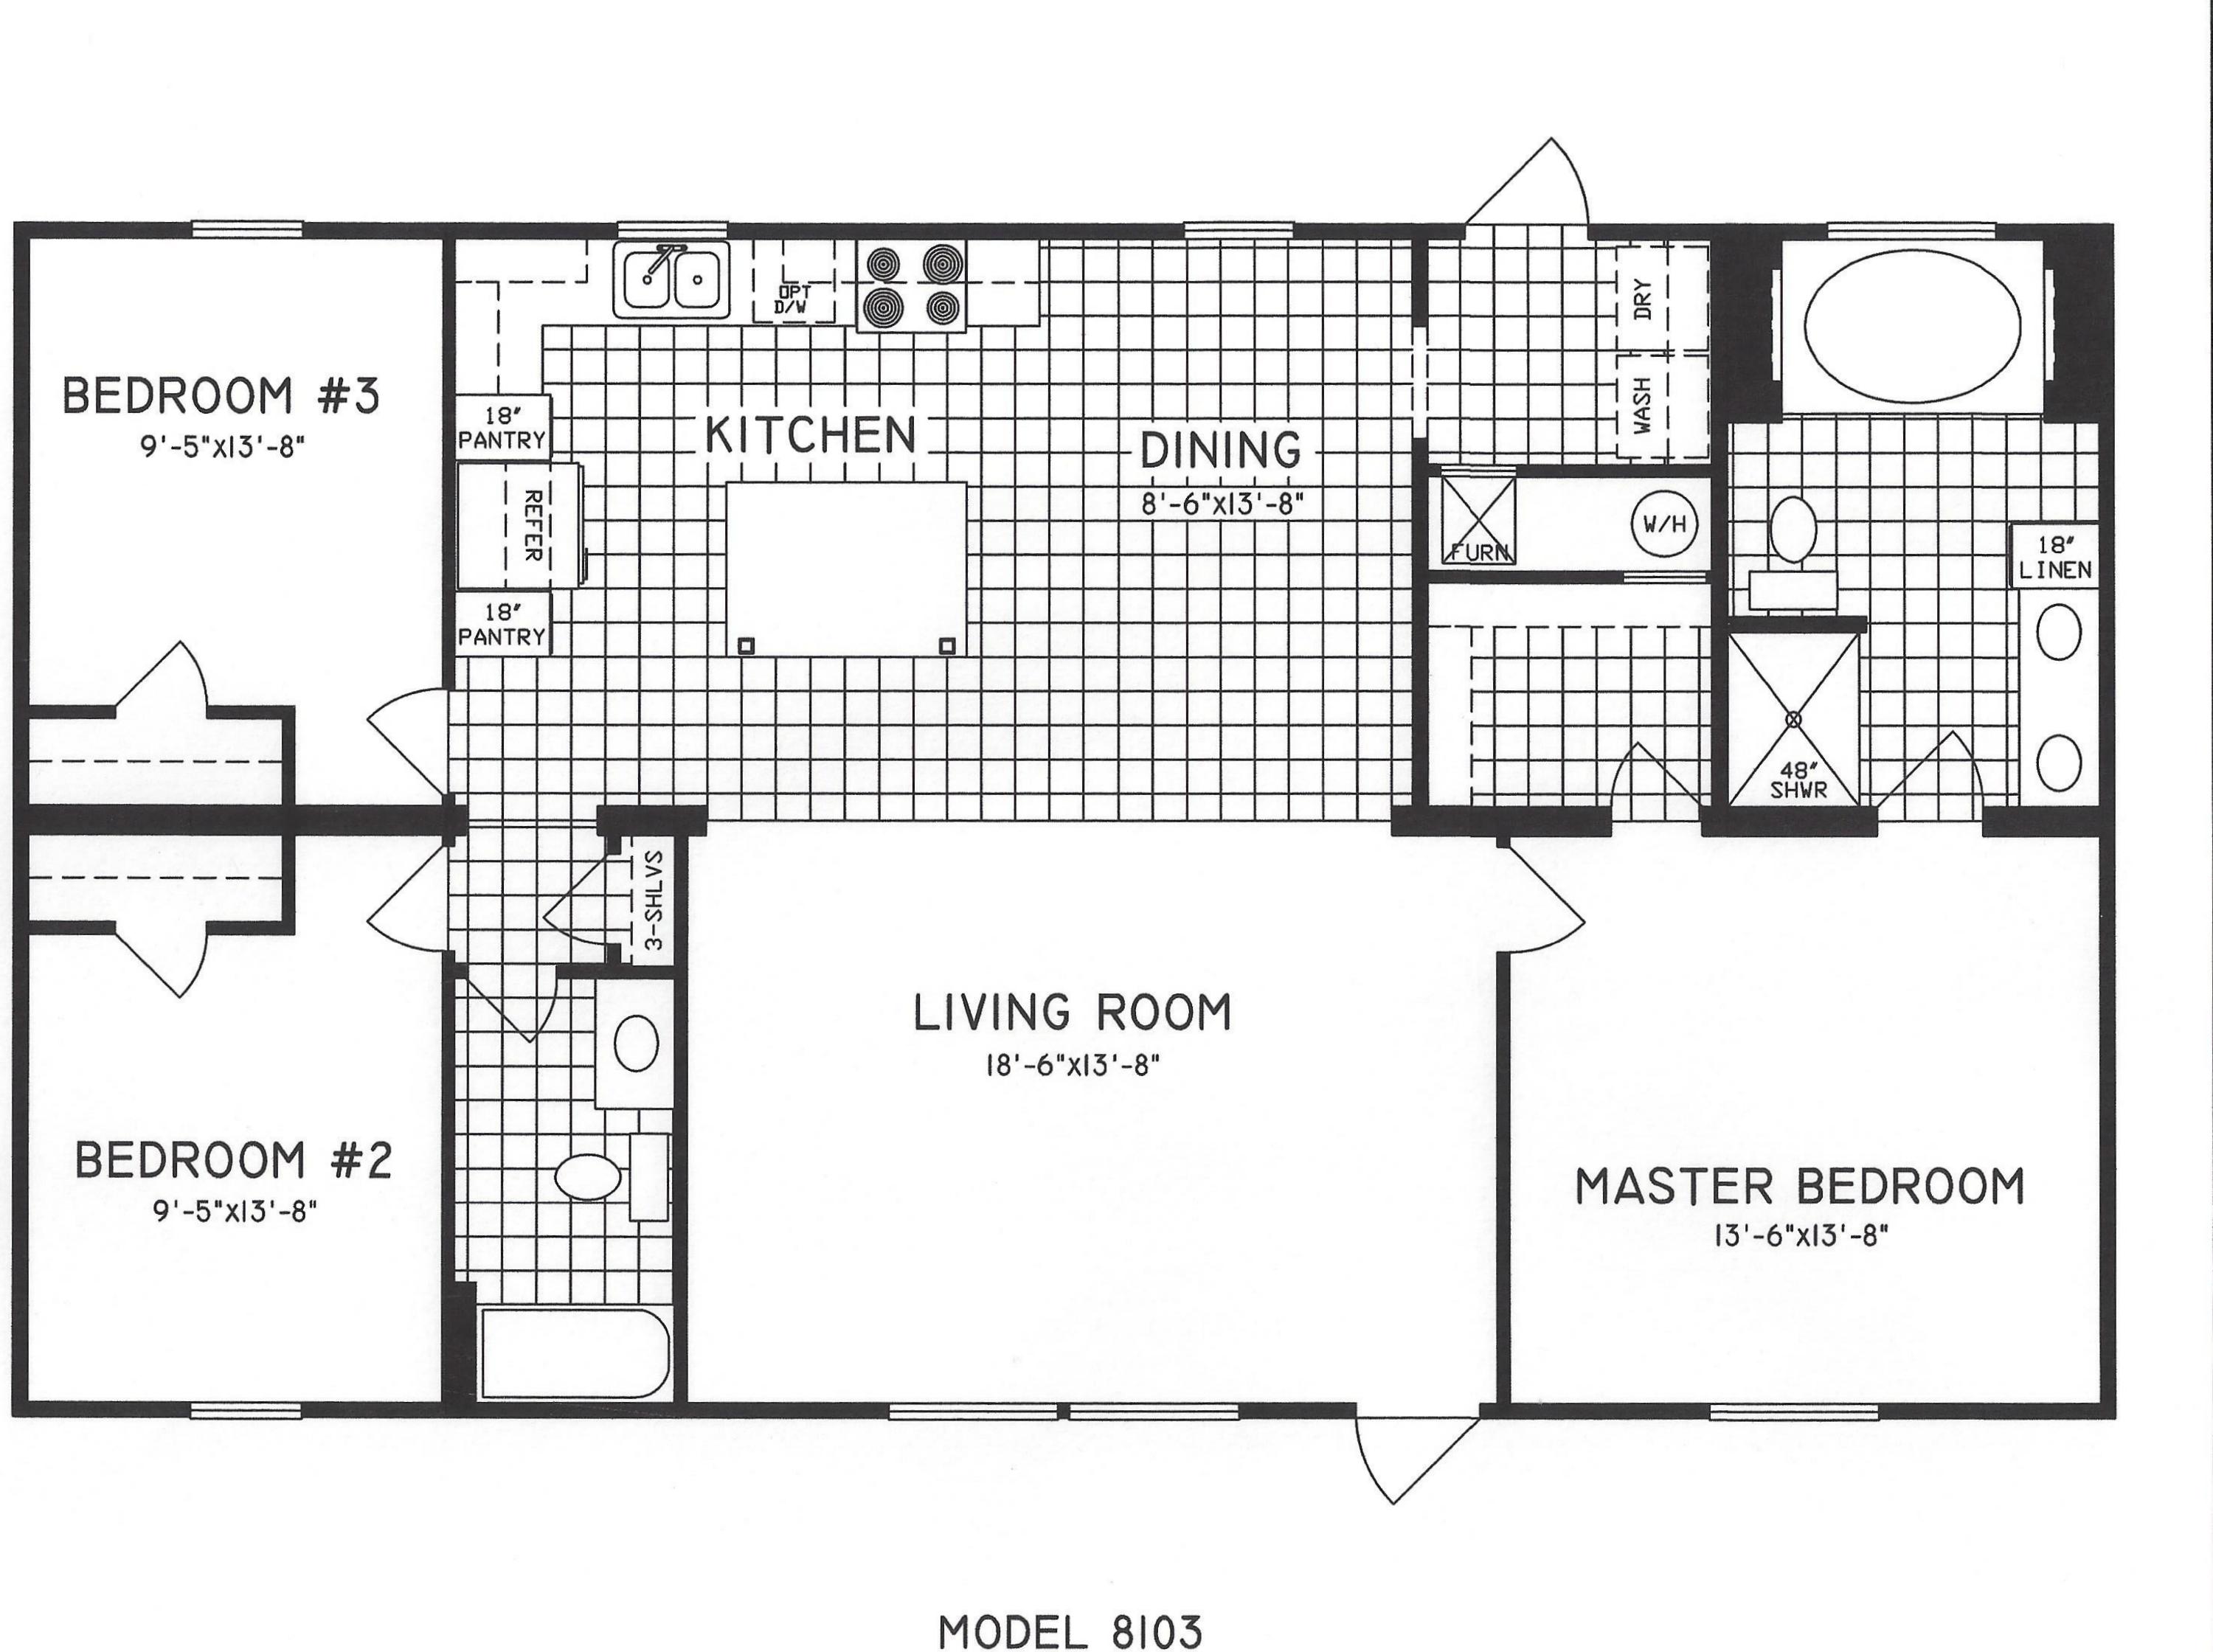 3 Bedroom Floor Plan C8103 Hawks Homes Manufactured